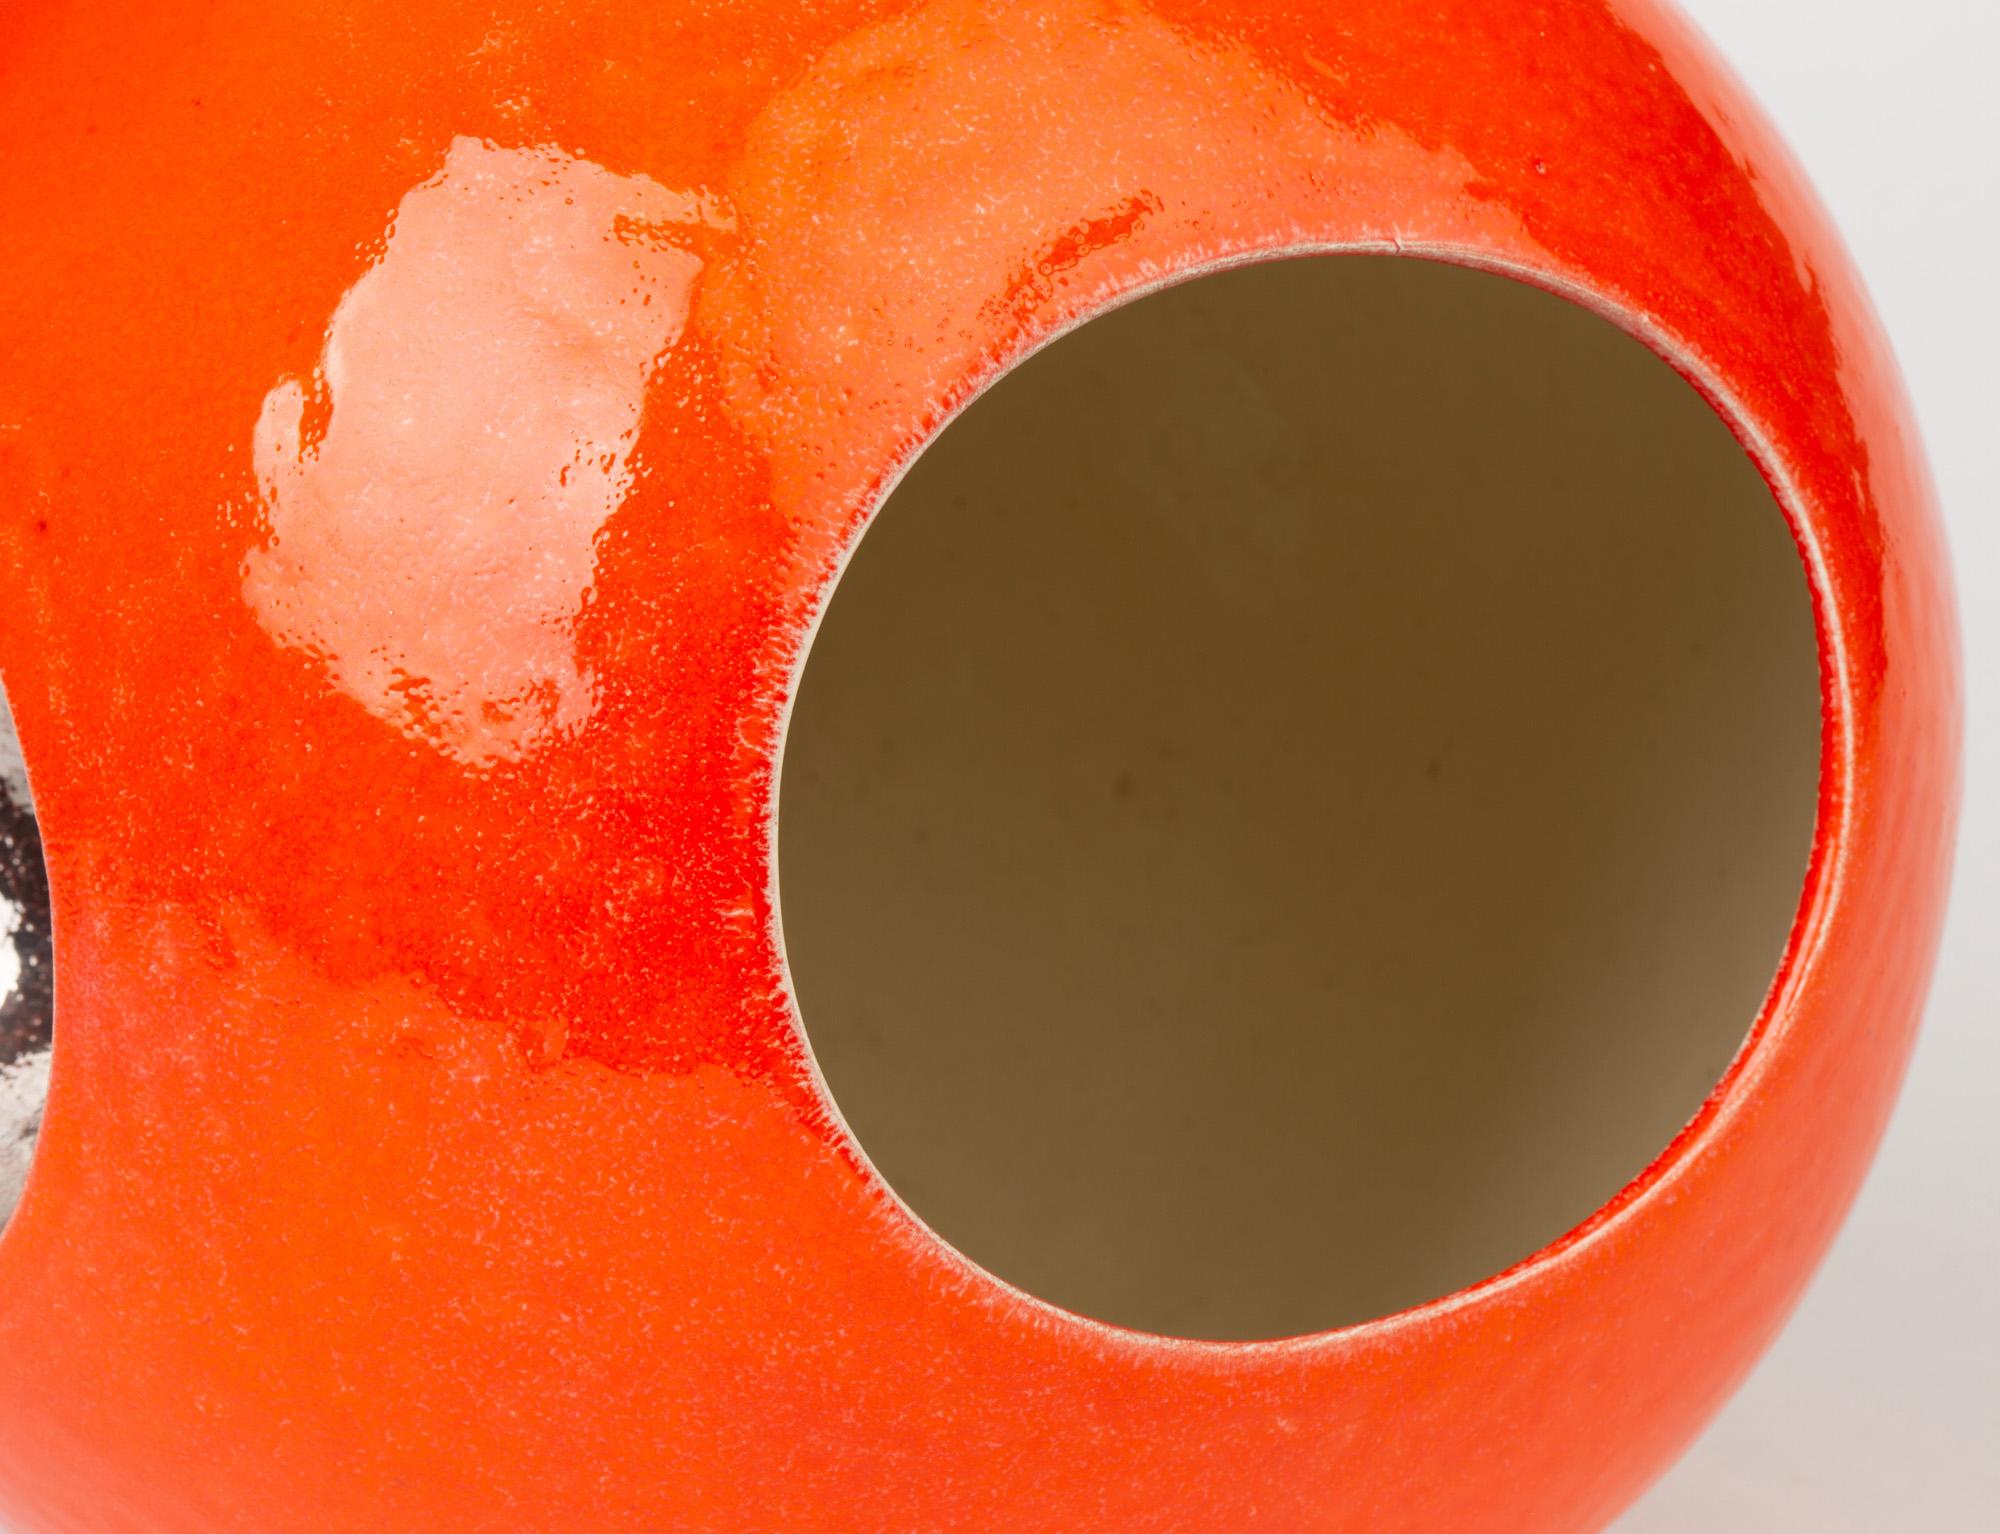 British Stylish Contemporary Orange Glazed Globular Vase Signed Morgan Dated 2004 For Sale